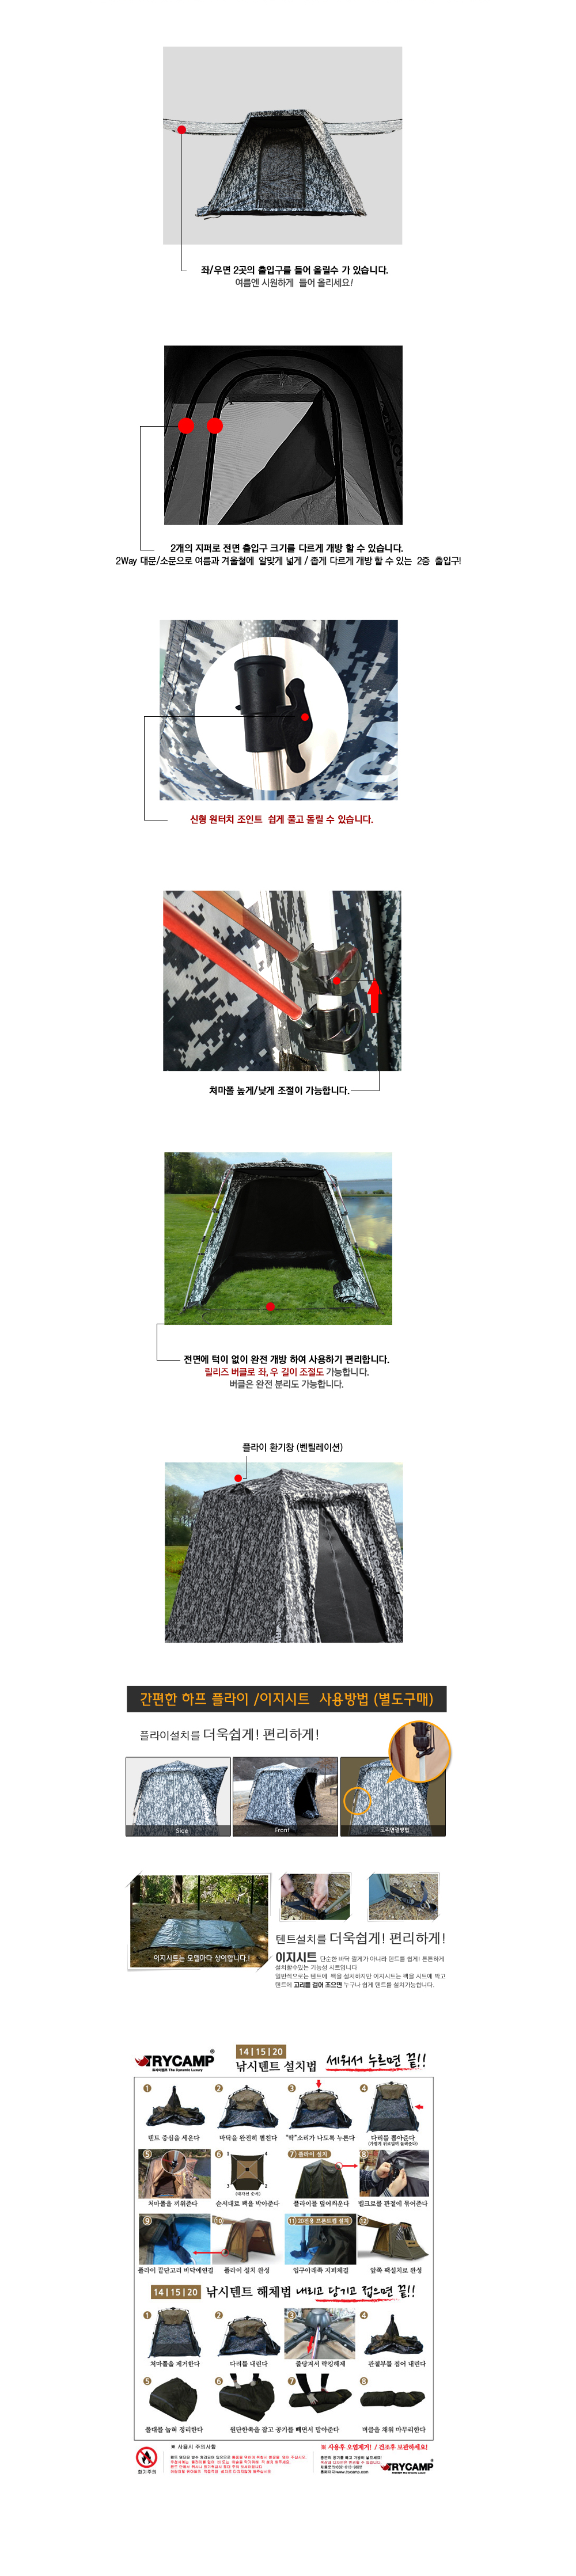 트라이캠프 낚시텐트 FO-14MF 무결로 위장밀리터리텐트